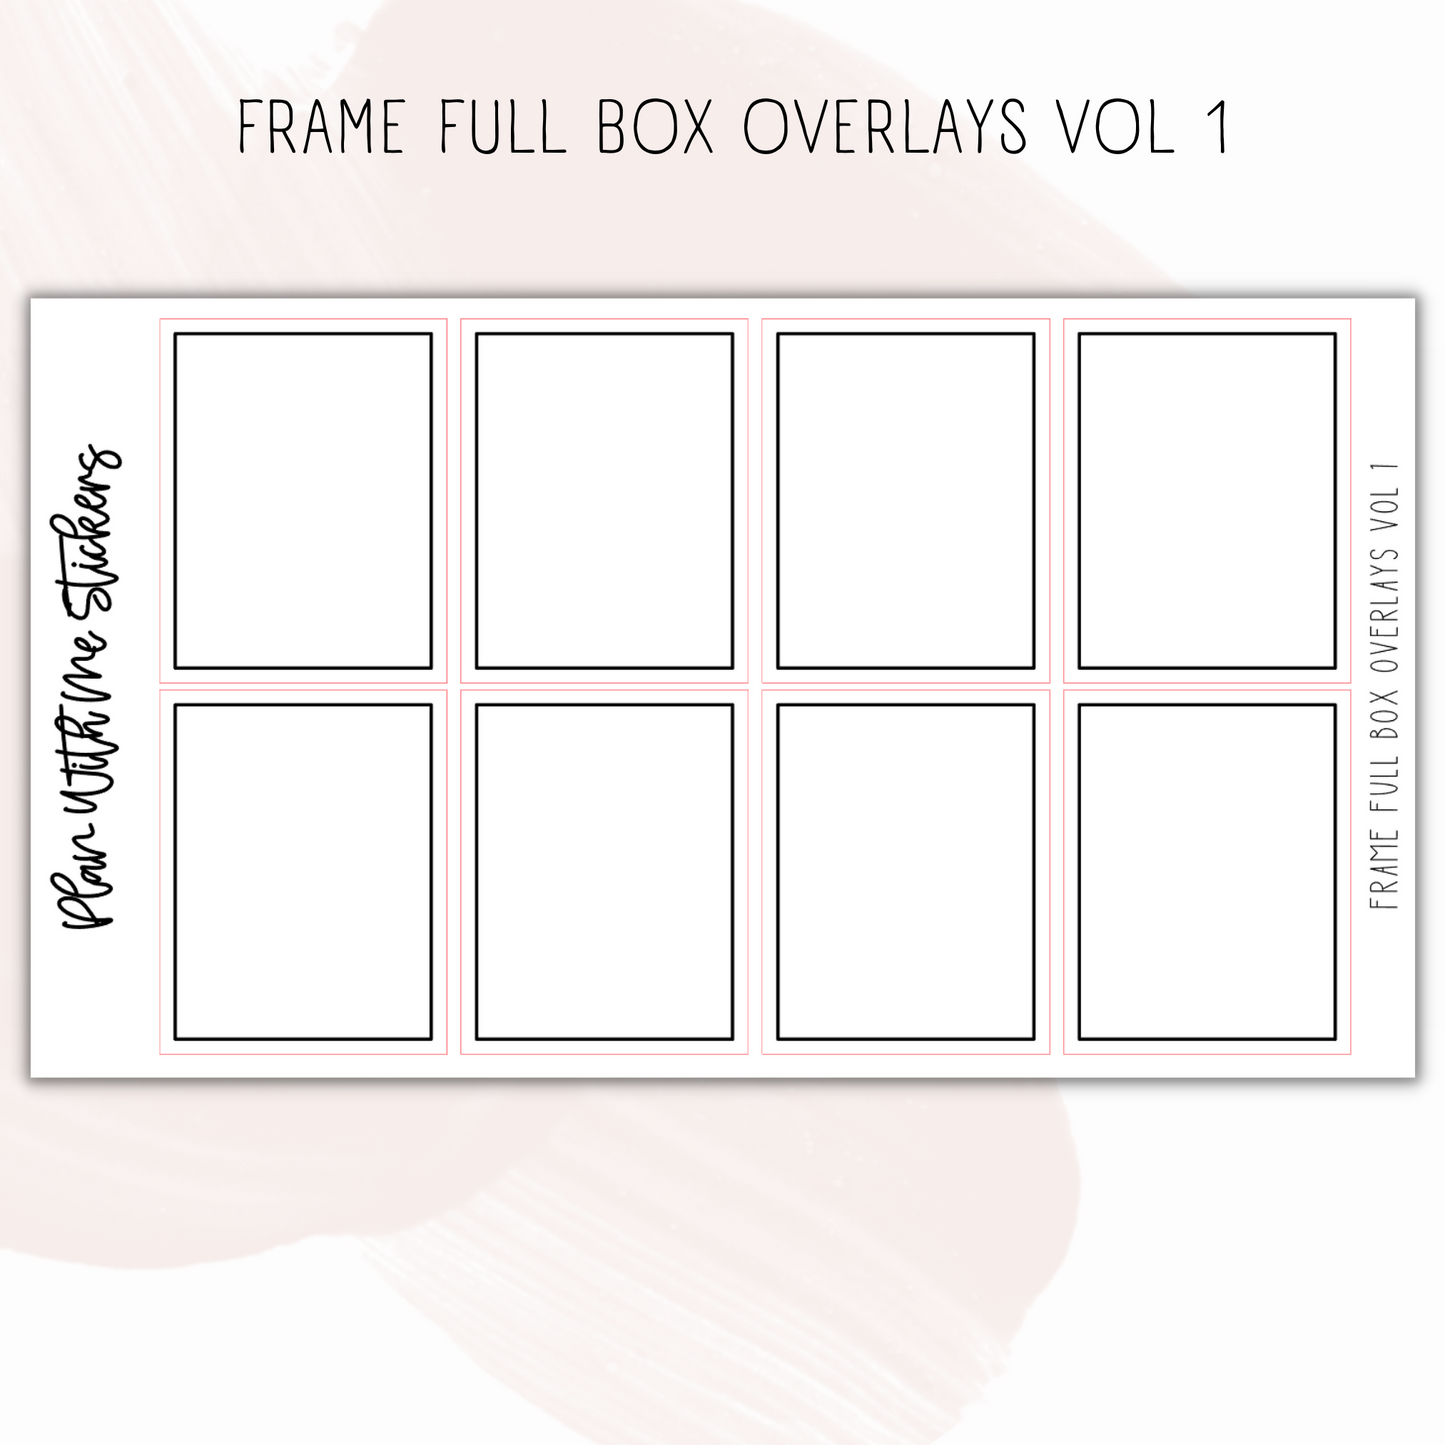 Frame Full Box Overlays